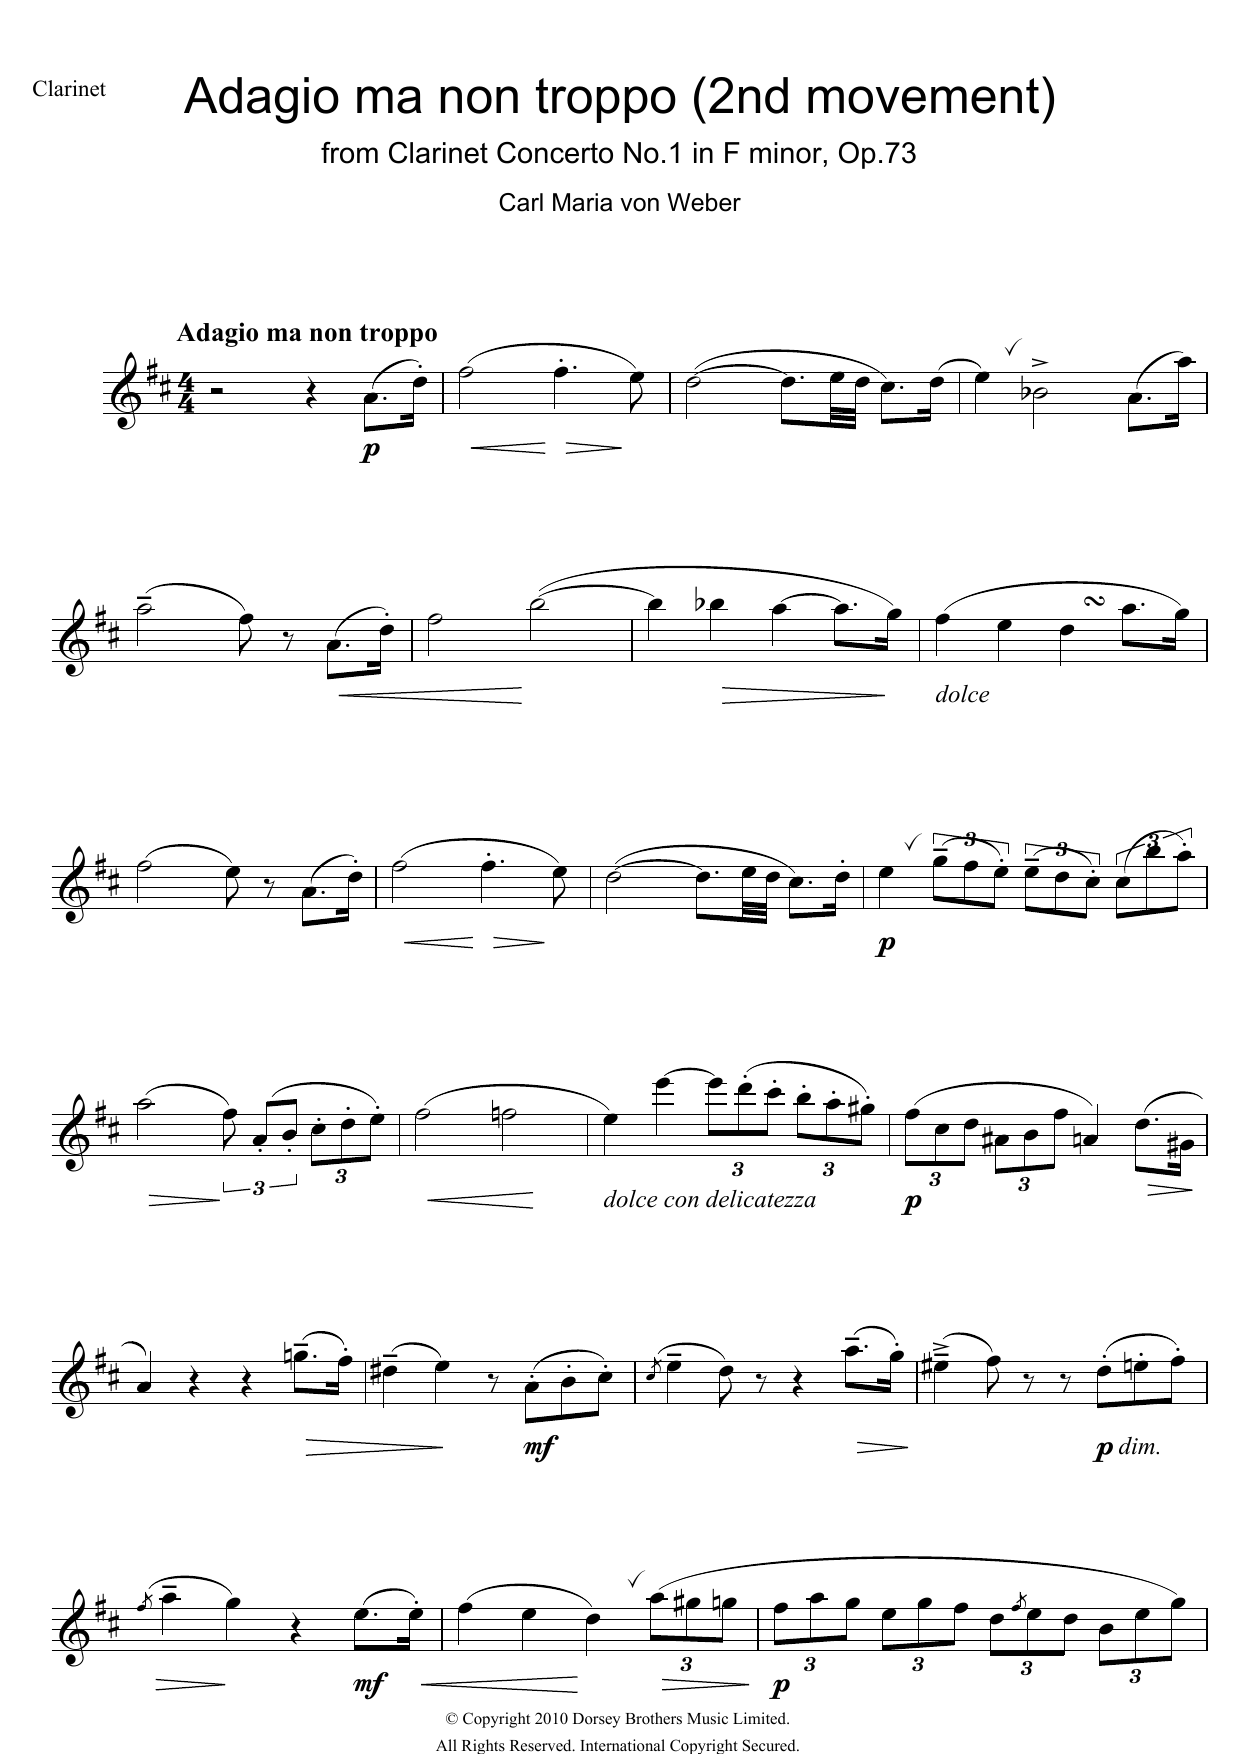 Clarinet Concerto No.1 In F Minor, Op.73, 2nd Movement: Adagio Ma Non Troppo sheet music